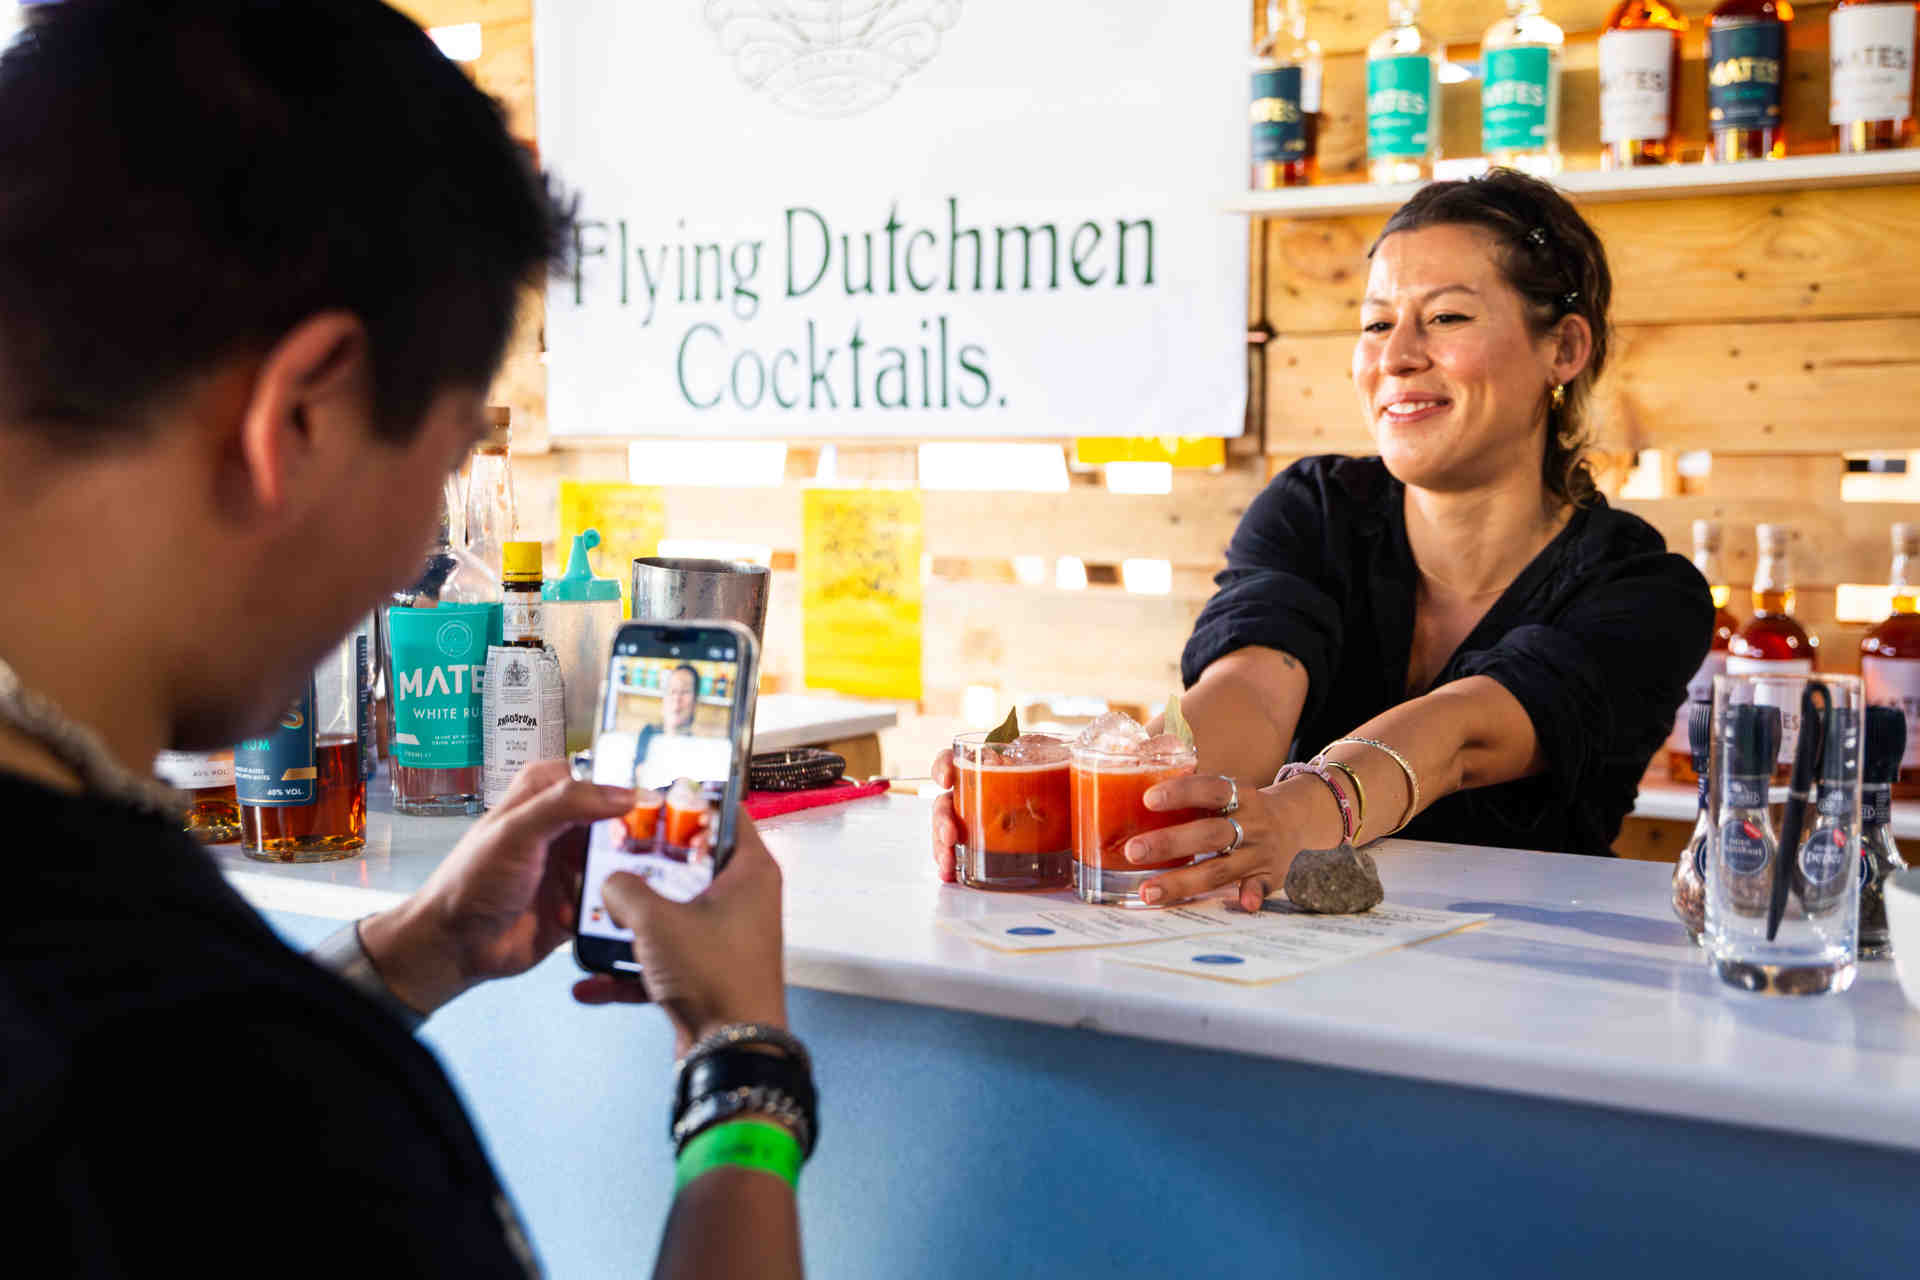 Flying Dutchmen Cocktails aus Amsterdam ist dieses Jahr wieder bei Liquid Market. © Peter Hruska